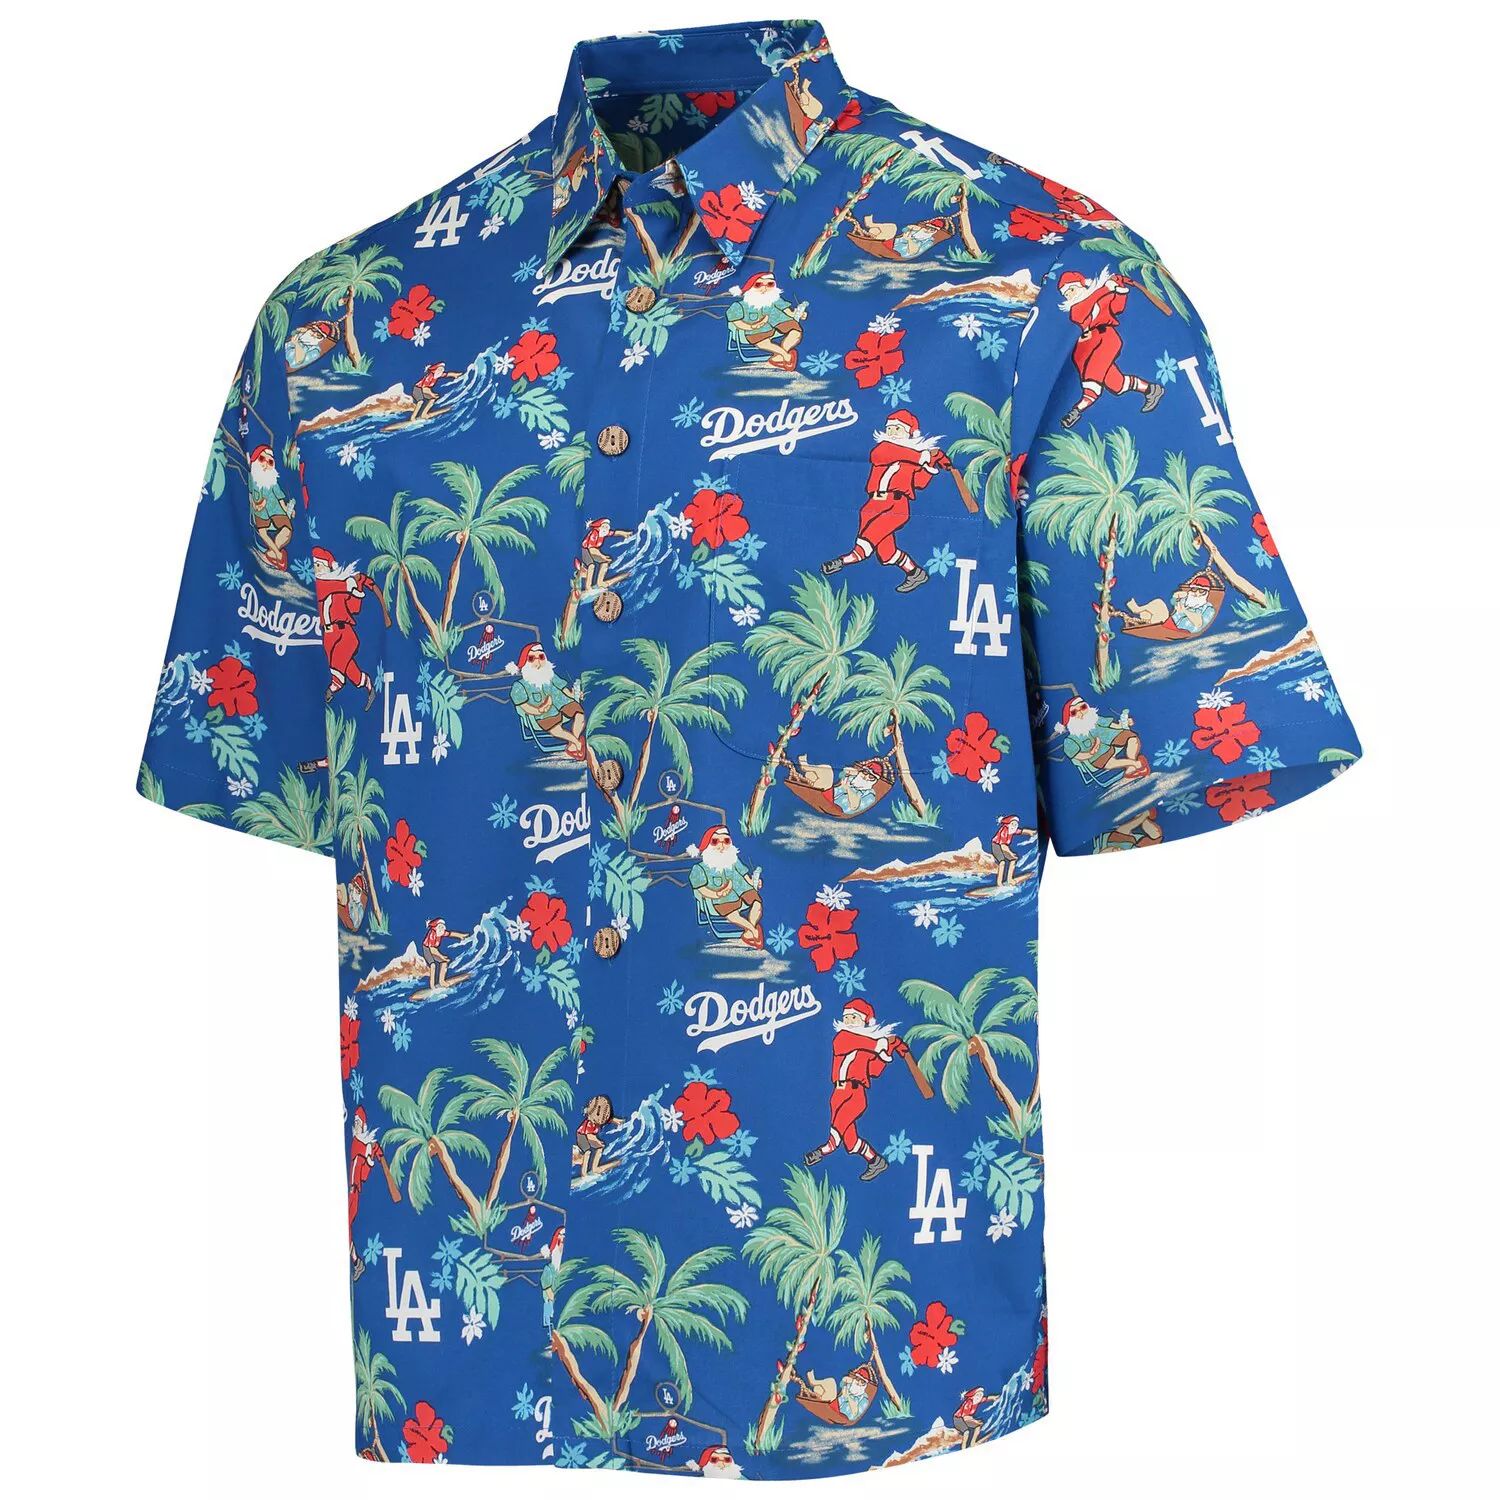 Мужская рубашка на пуговицах Reyn Spooner Royal Los Angeles Dodgers Holiday